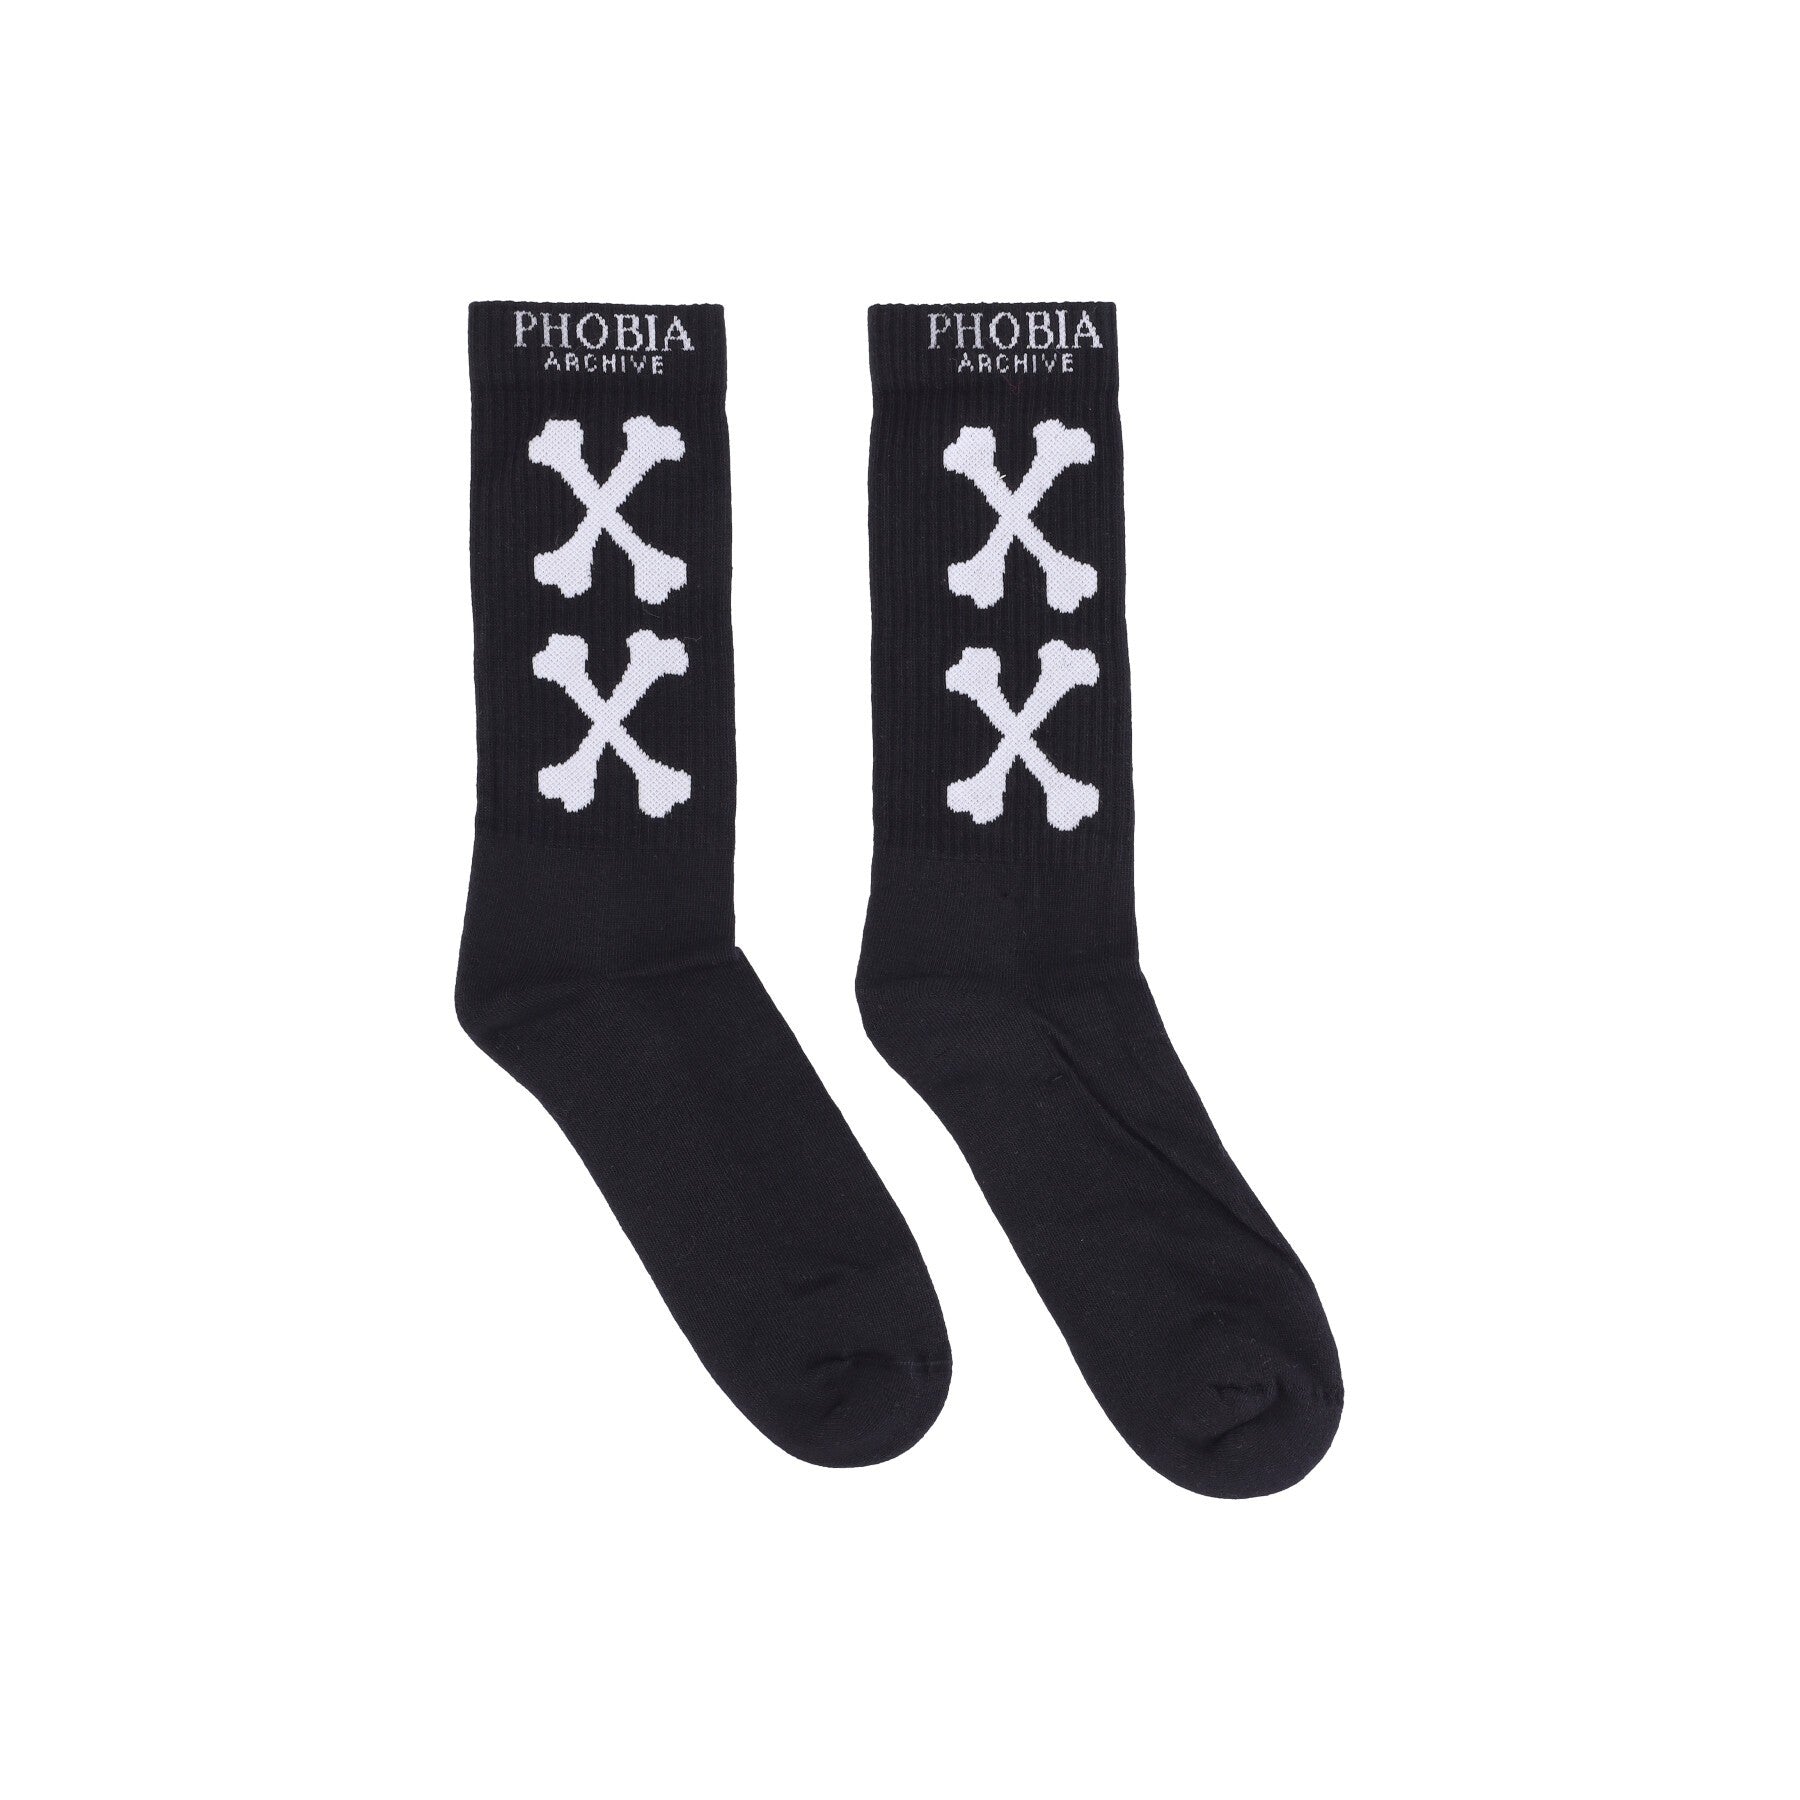 Phobia, Calza Media Uomo Cross Bones Socks, Black/white